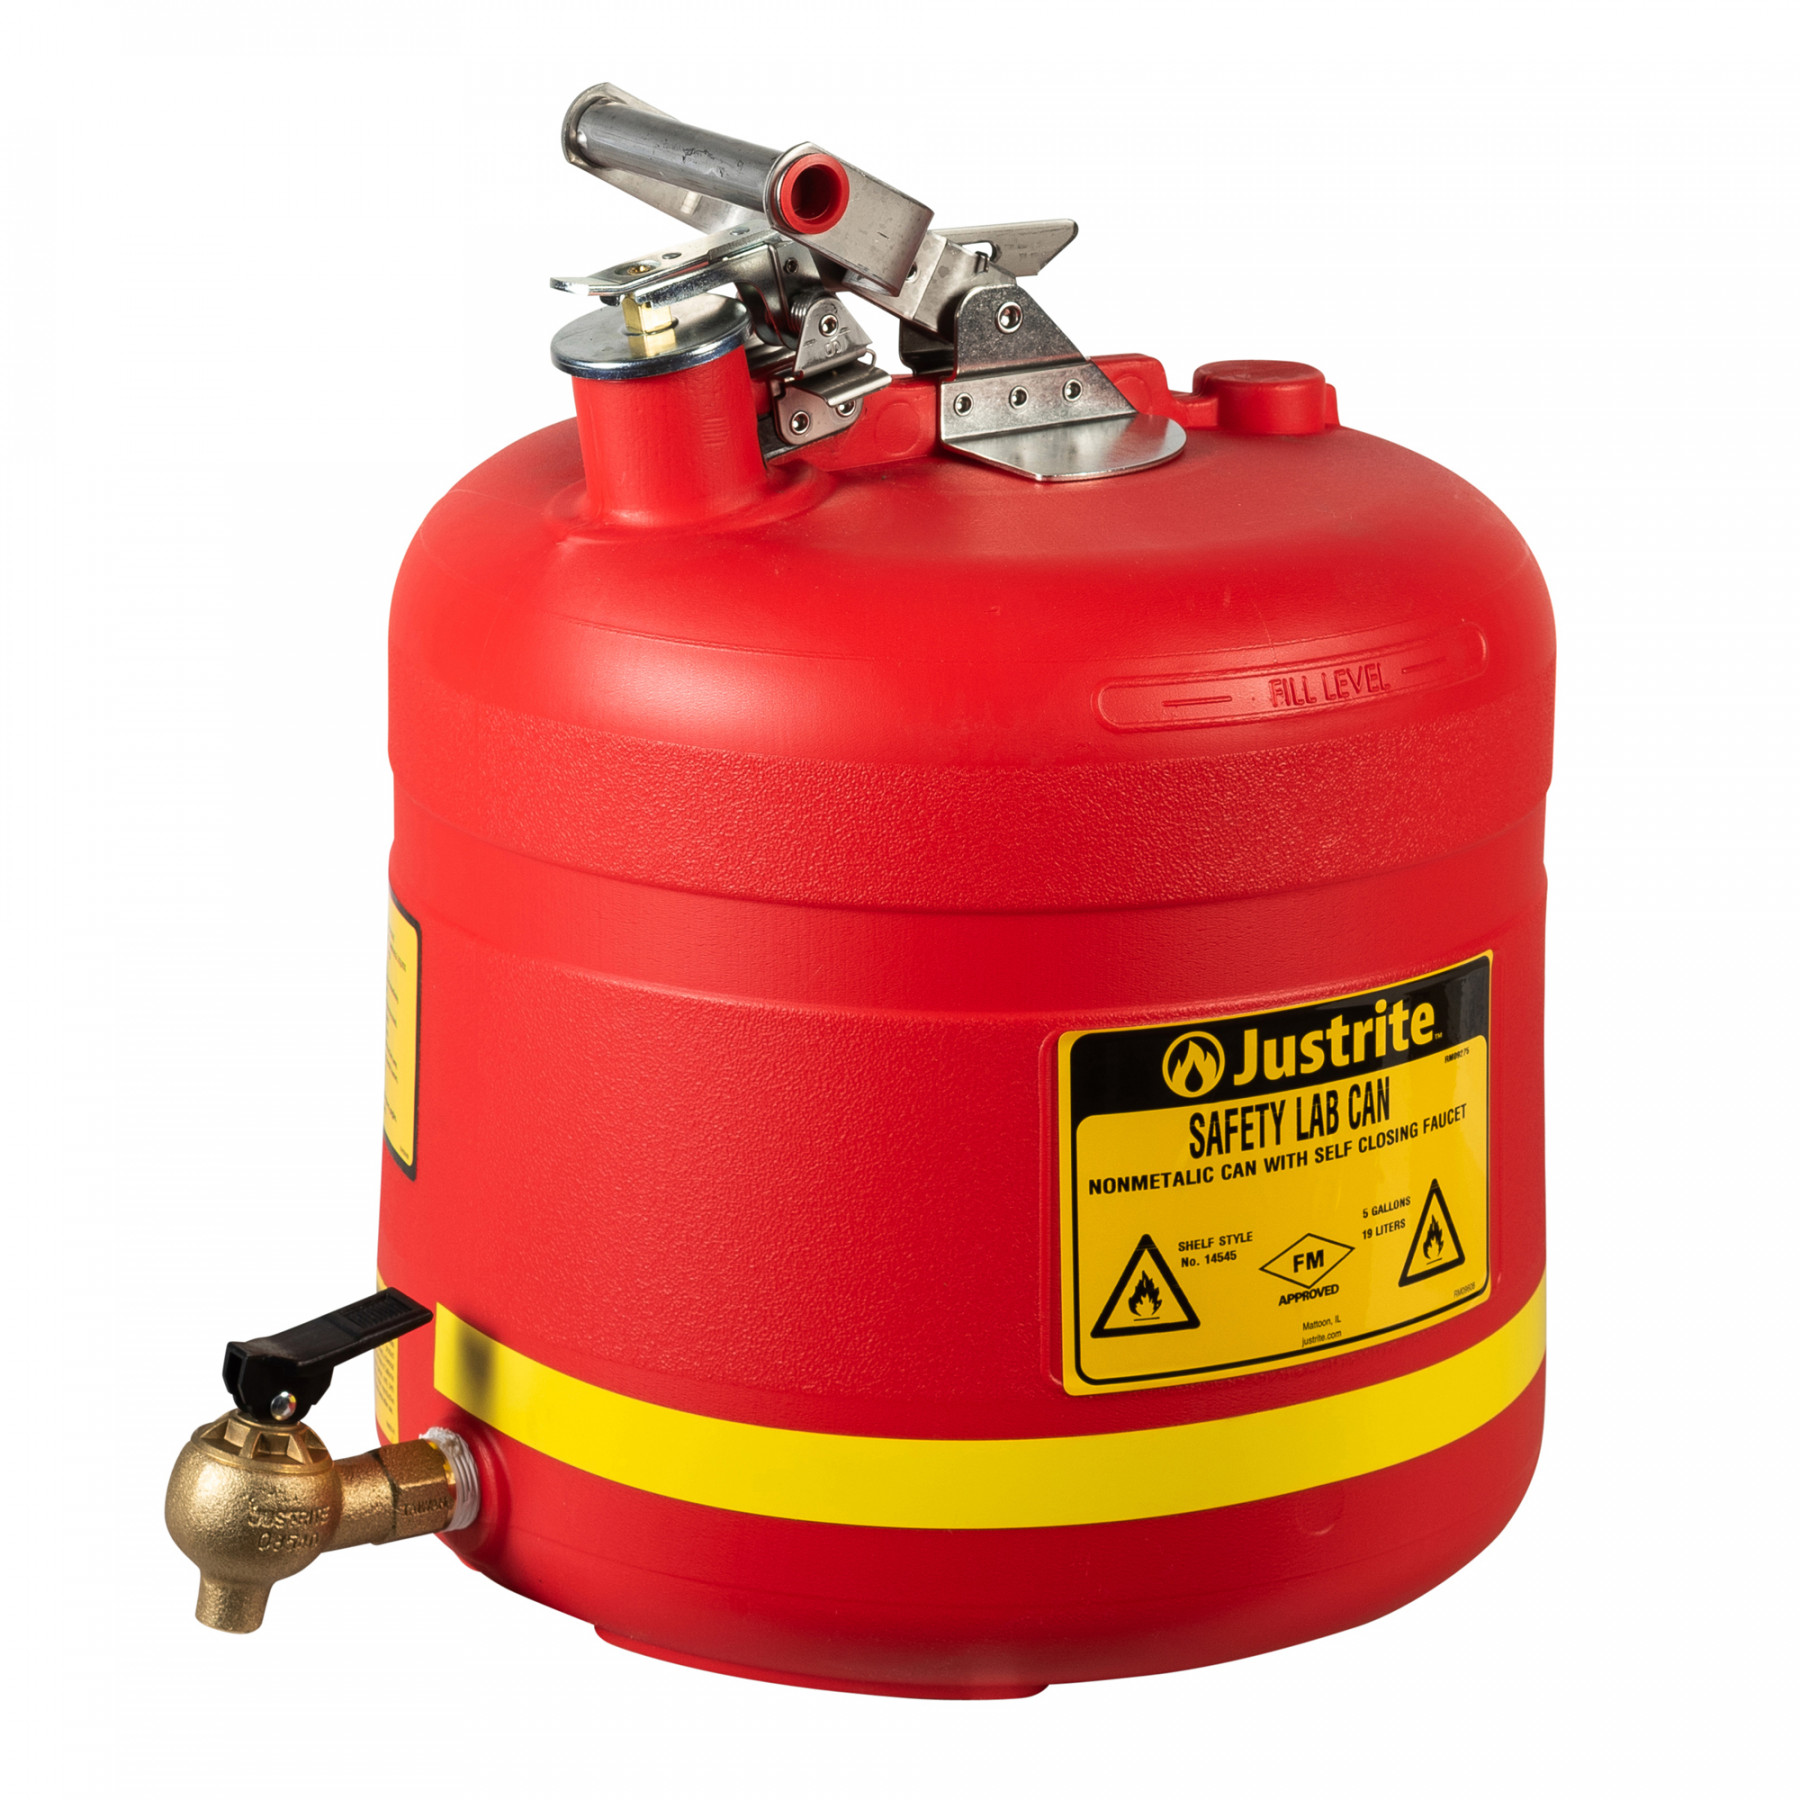 PE Sicherheitsbehälter Typ I 19 Liter in rot für brennbare Flüsssigkeiten mit Messinghahn